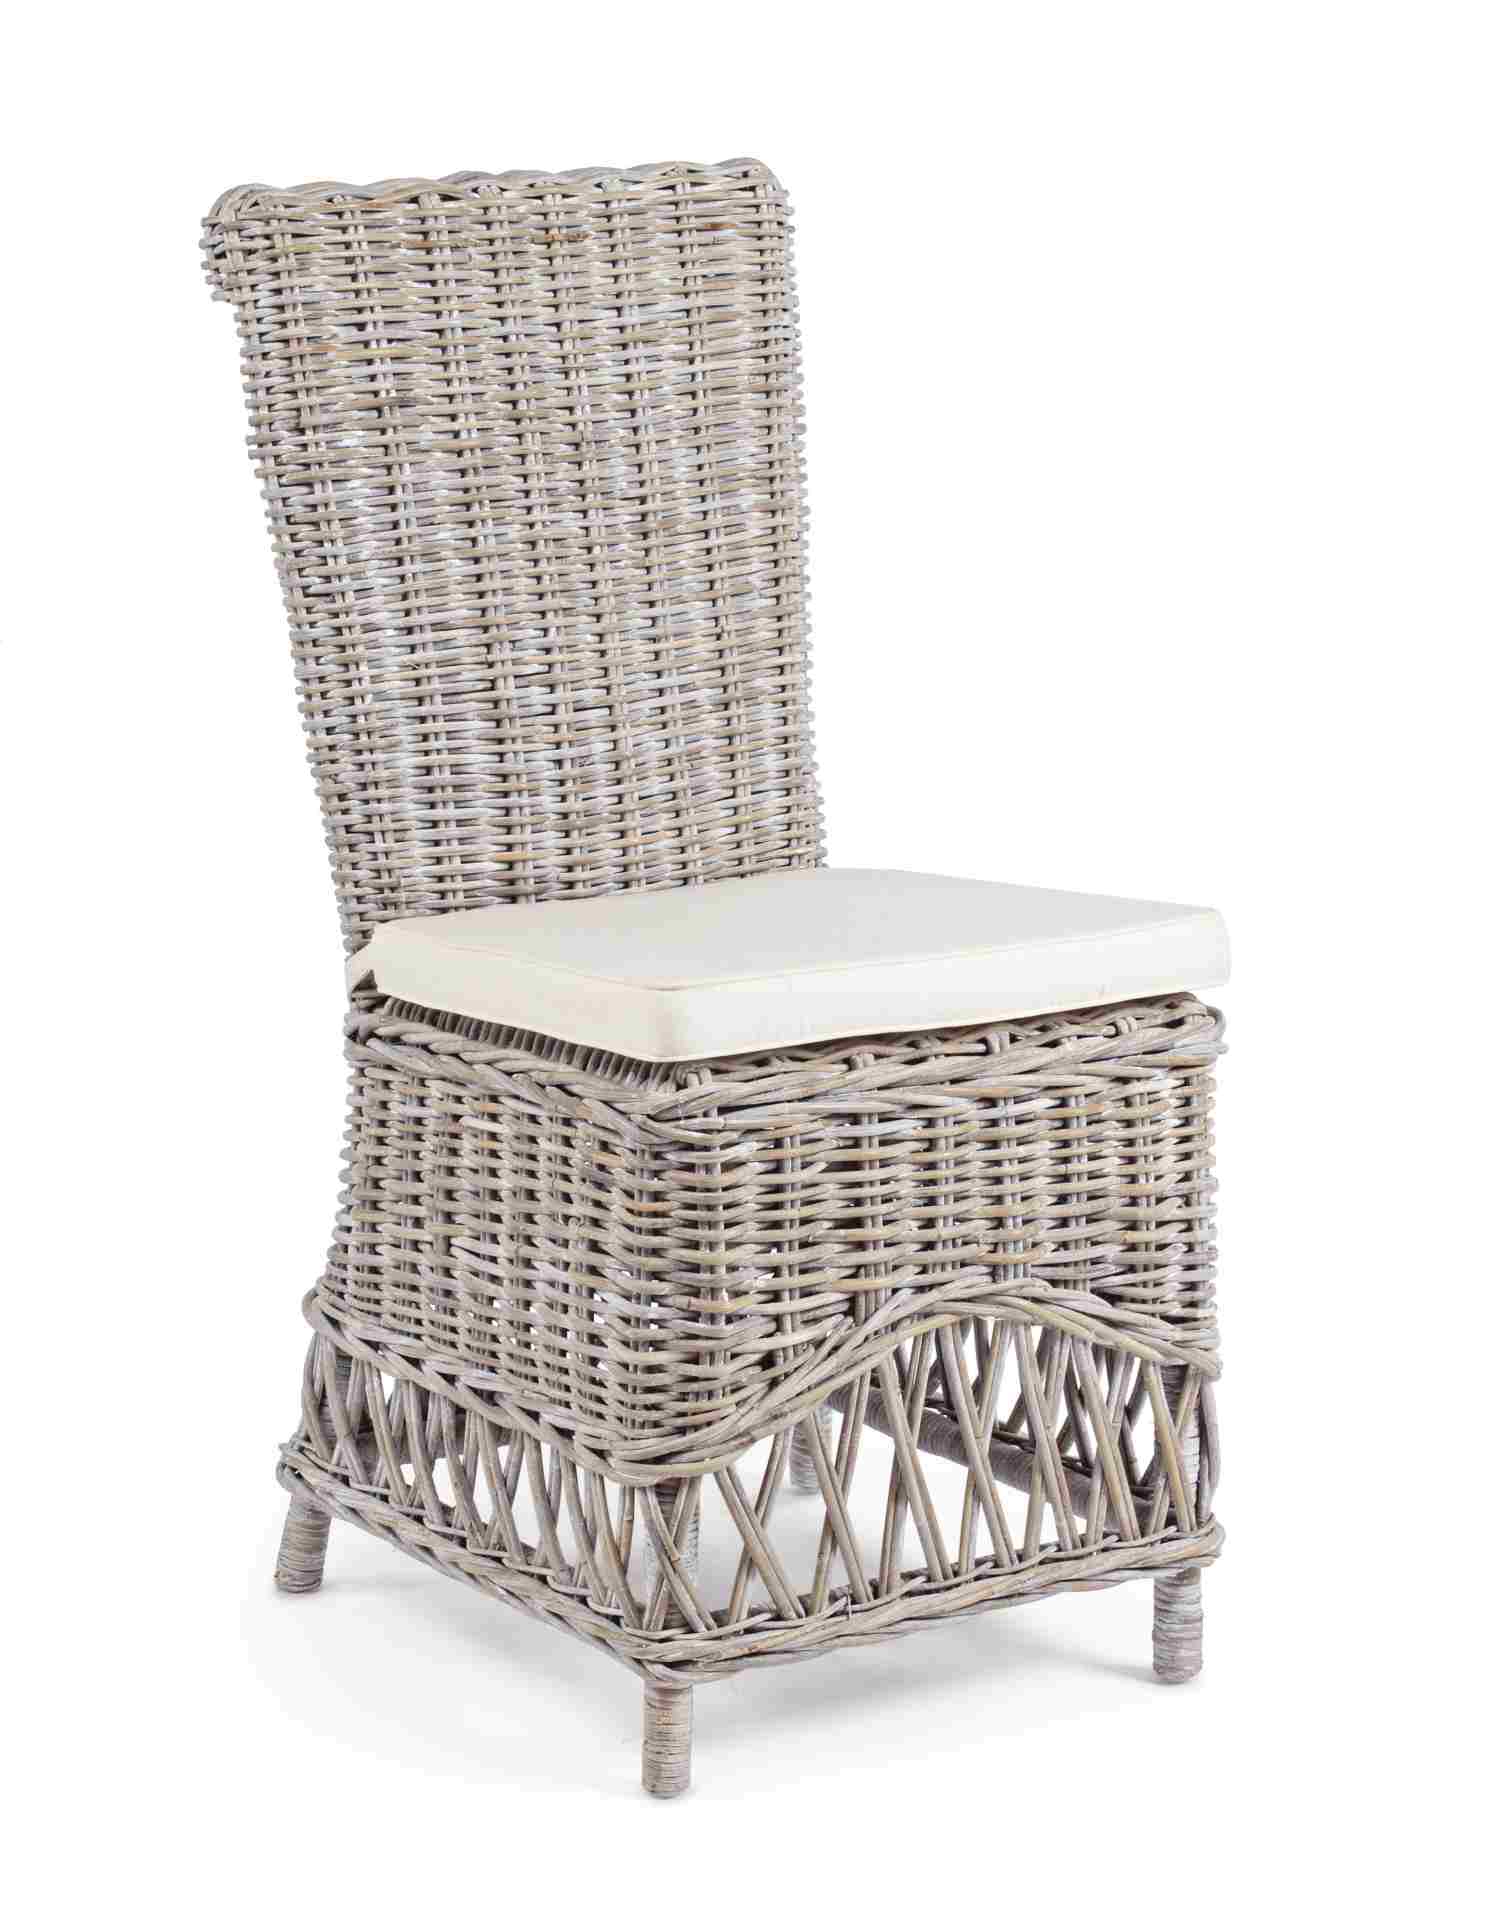 Der Stuhl Warna überzeugt mit seinem klassischem Design. Gefertigt wurde der Stuhl aus Rattan. Der Stuhl wird inklusive Sitzkissen aus Baumwolle geliefert. Die Sitzhöhe beträgt 53 cm.